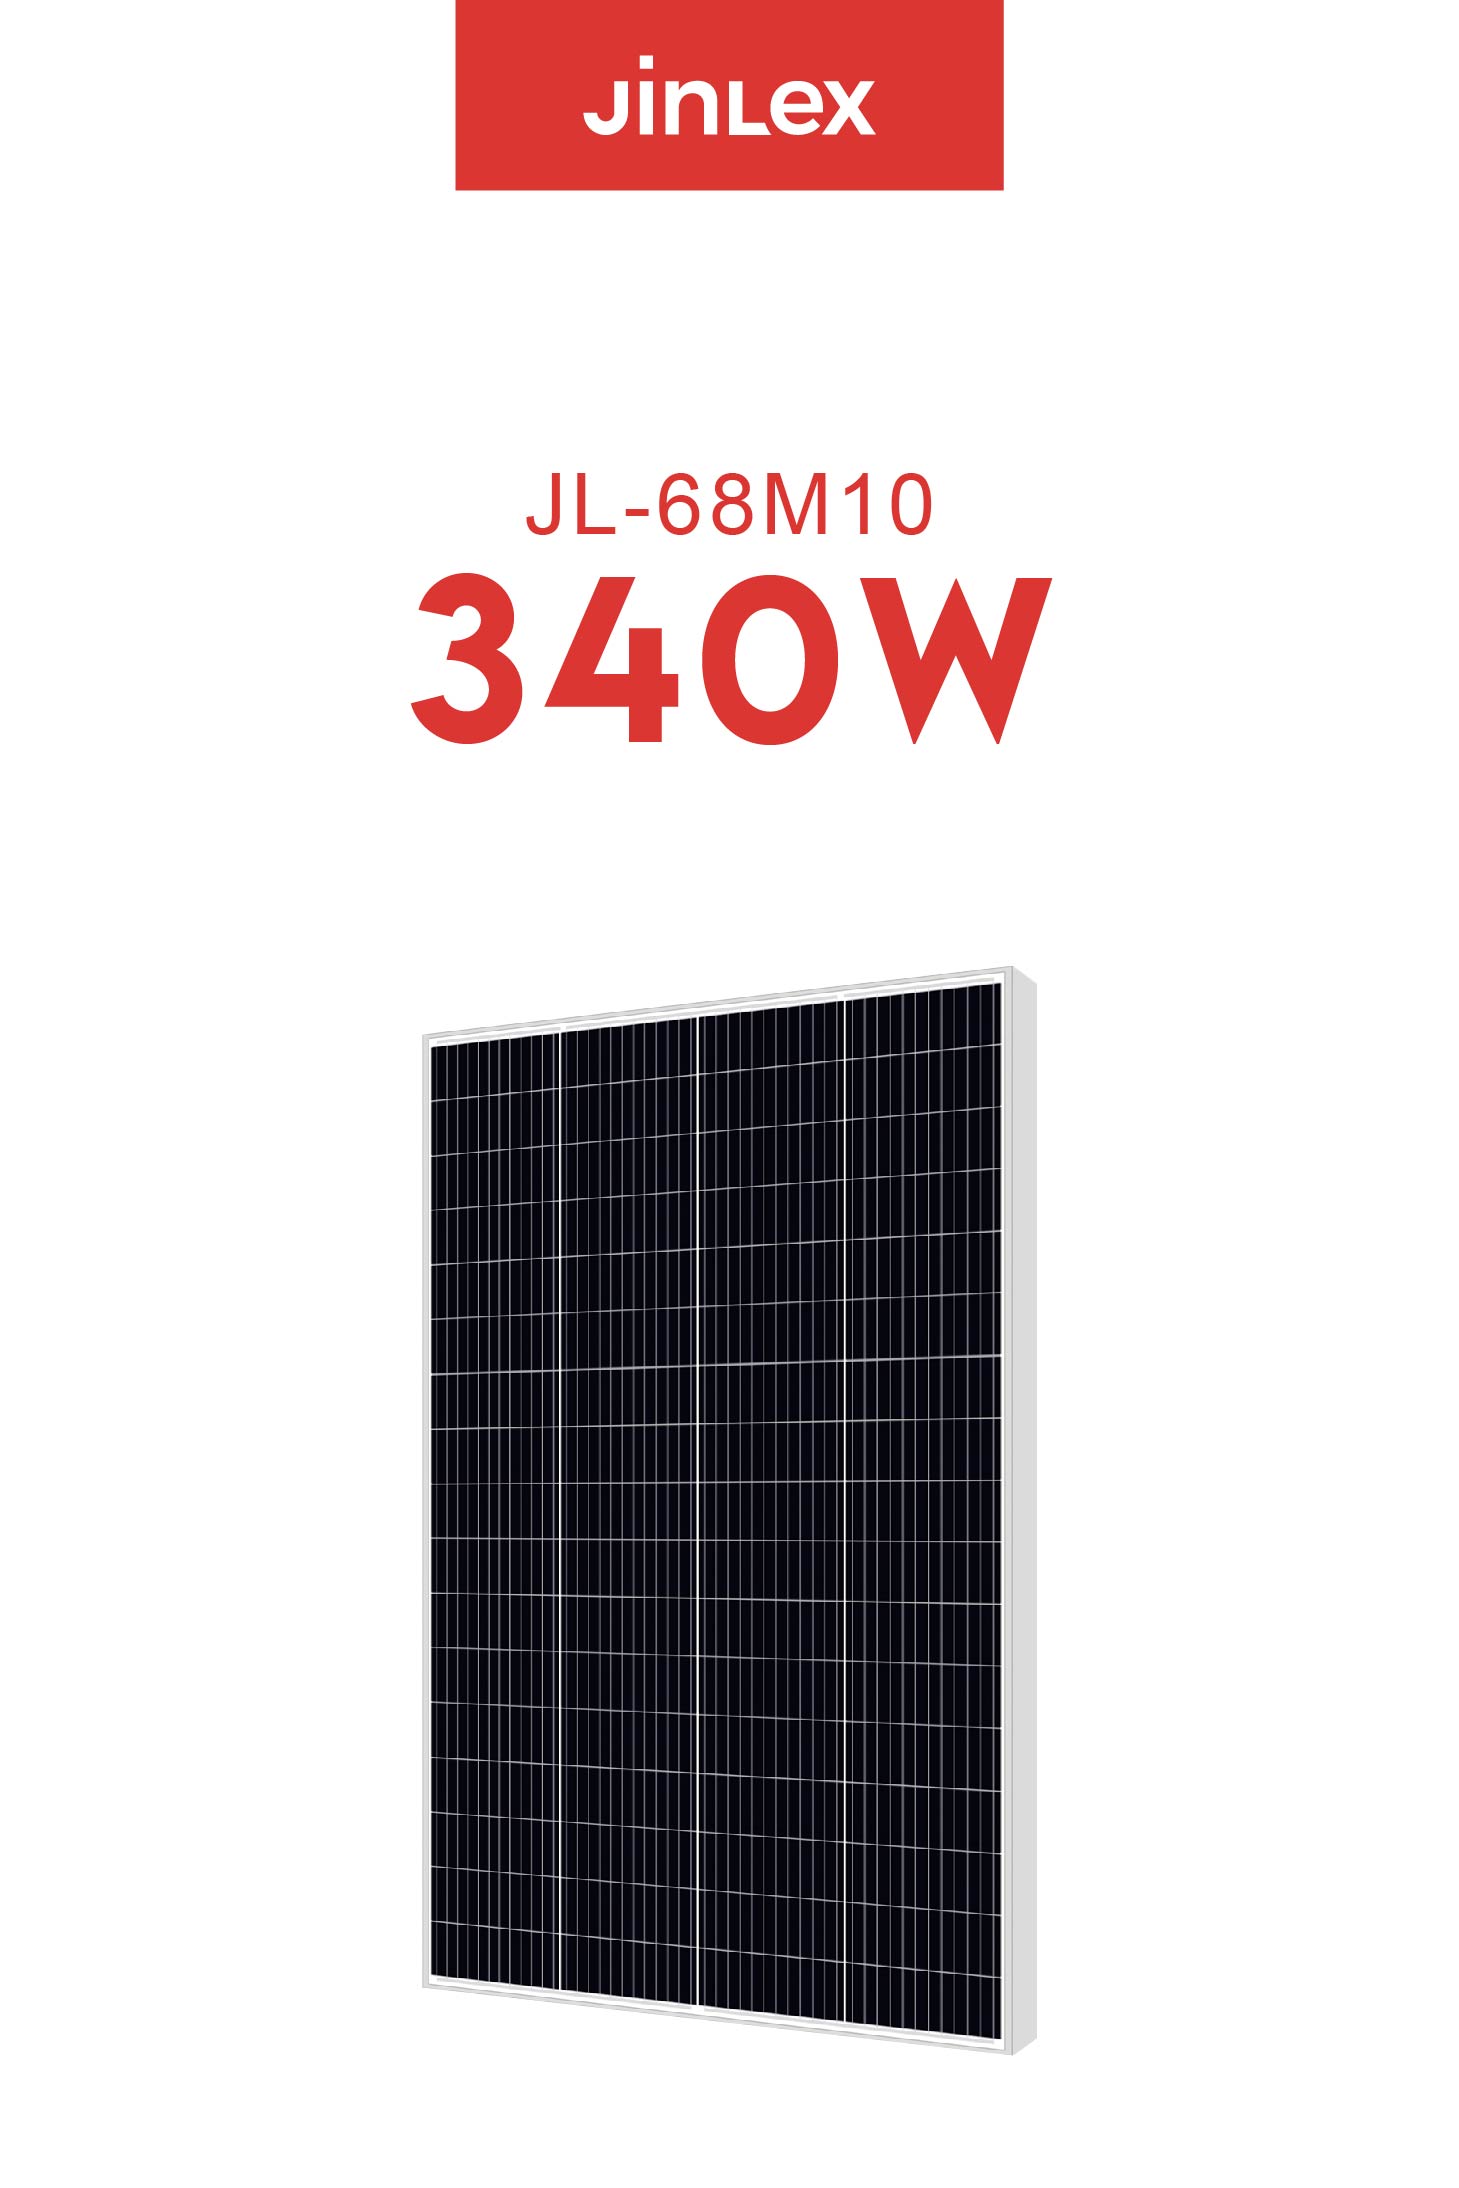 JL340-68M10